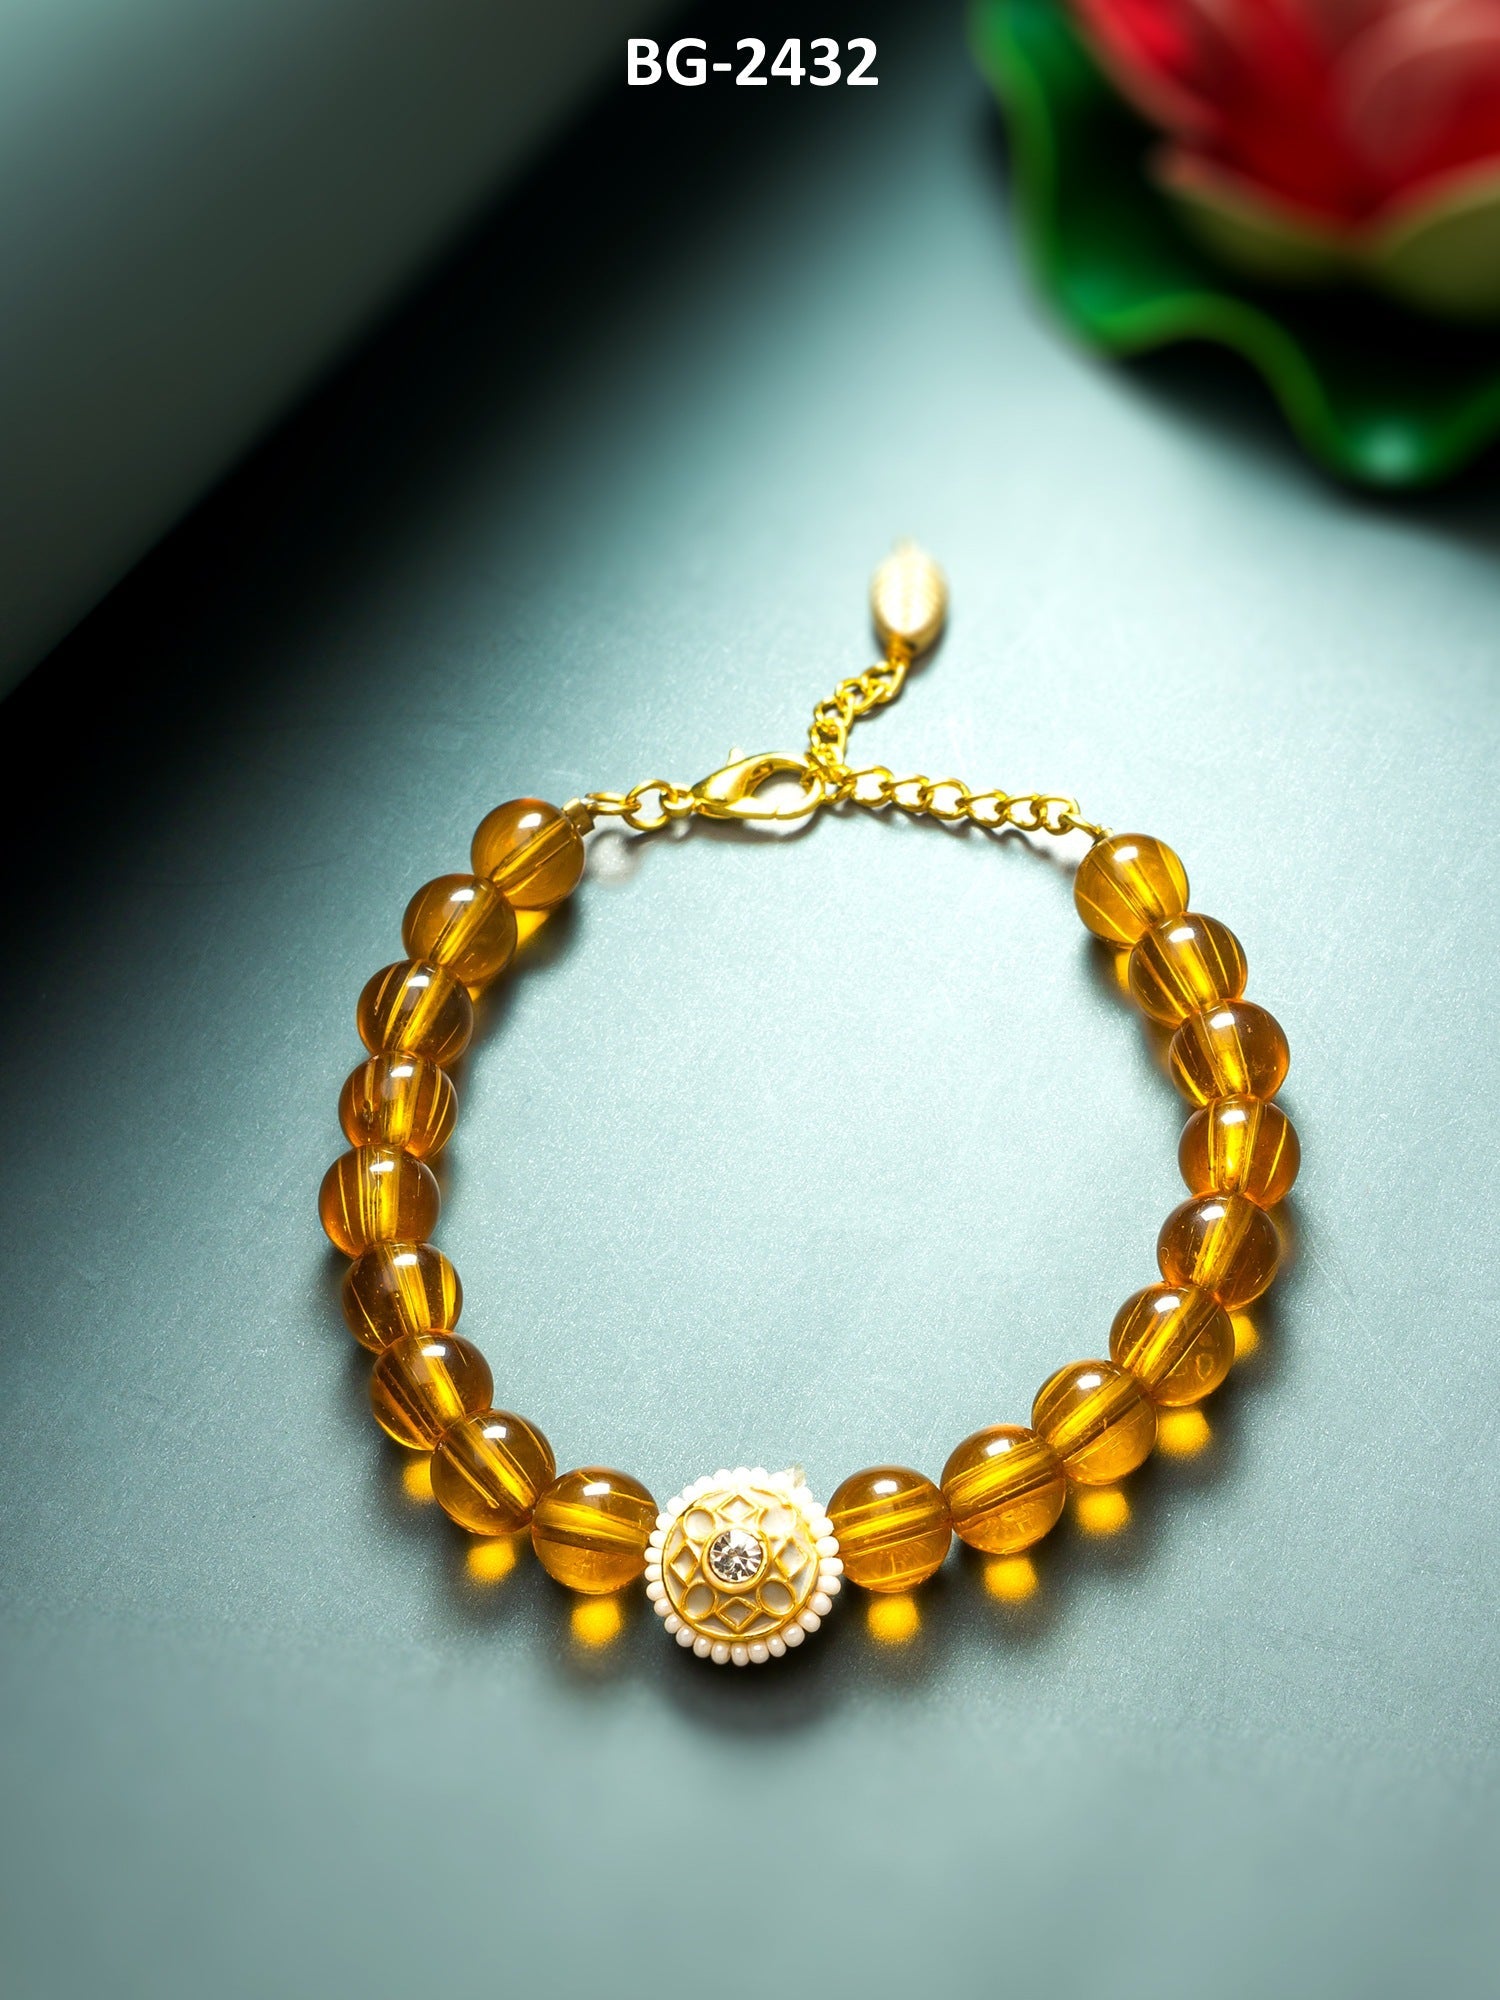 Orange and gold-toned link bracelet